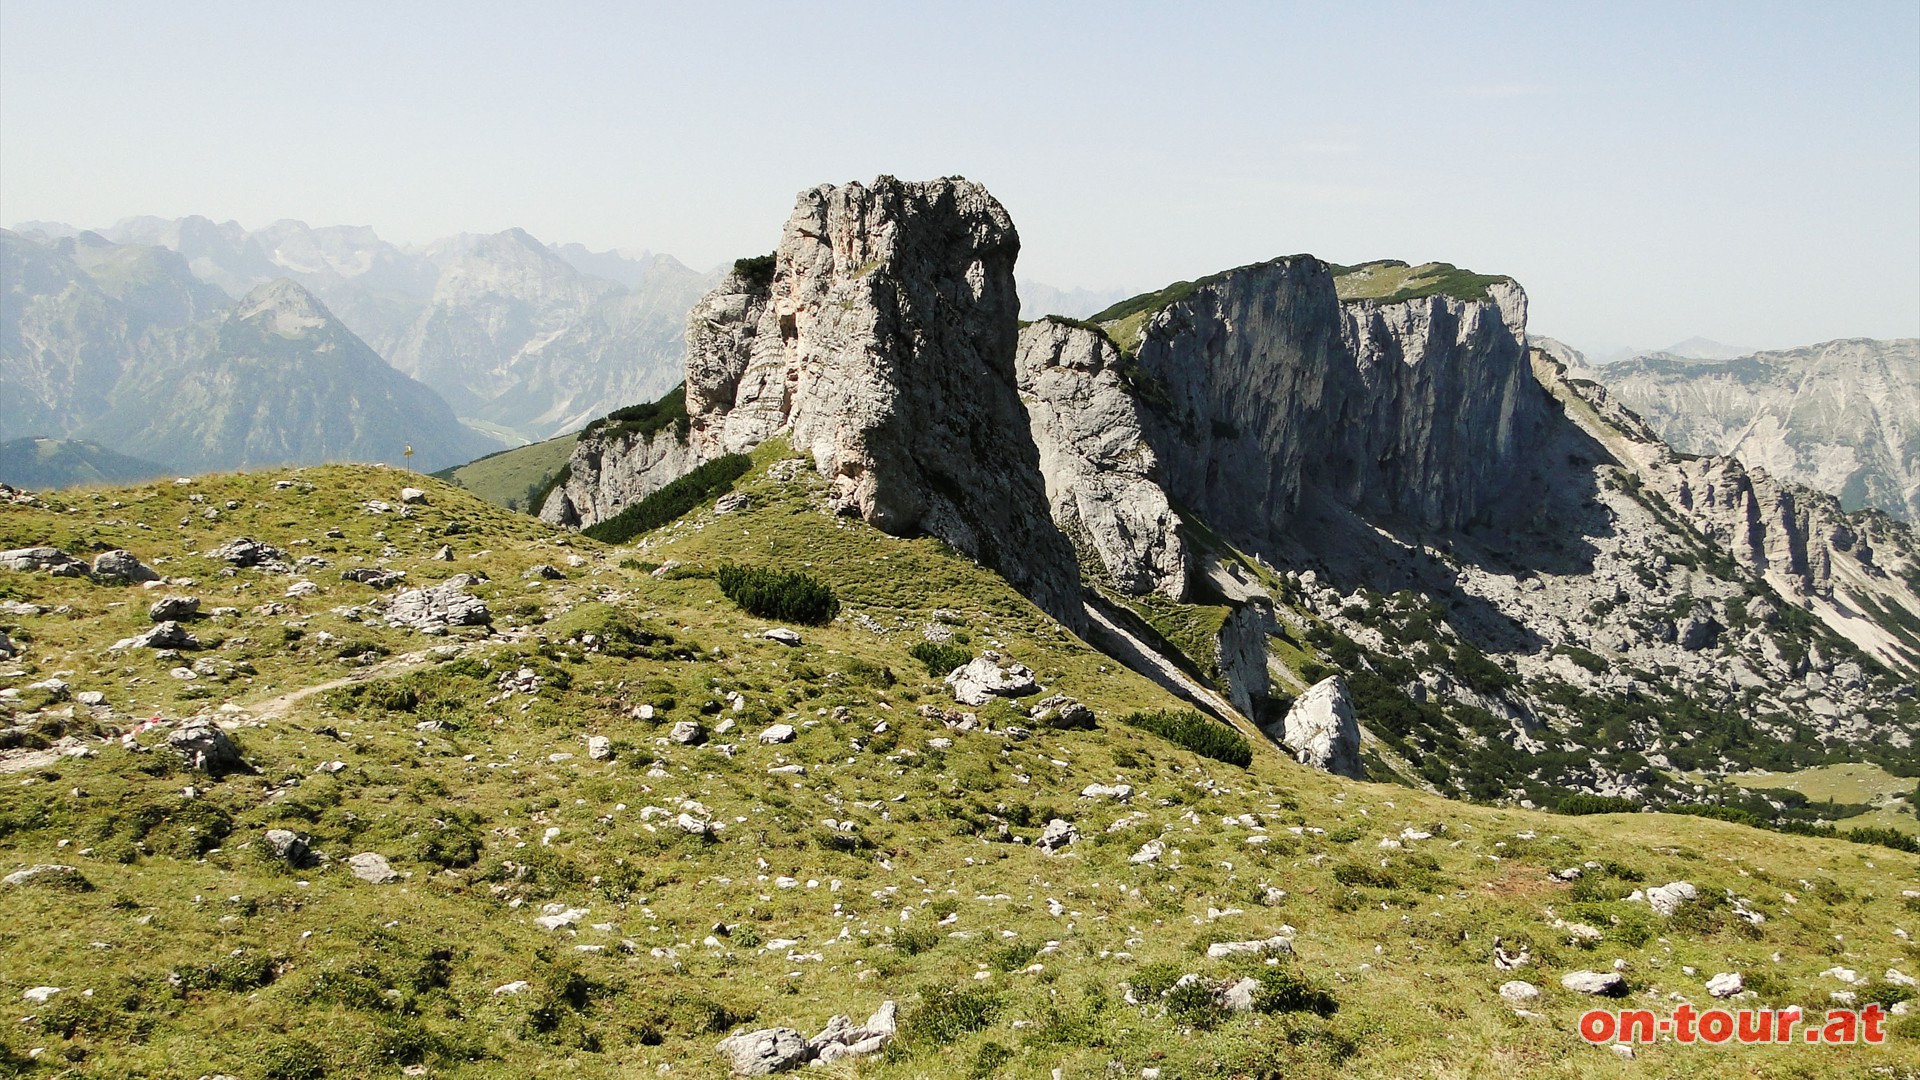 Die Felskltze beim Kotalmsattel erinnern an eine Western-Film Landschaft, allerdings ohne die satten, artenreichen Almwiesen.